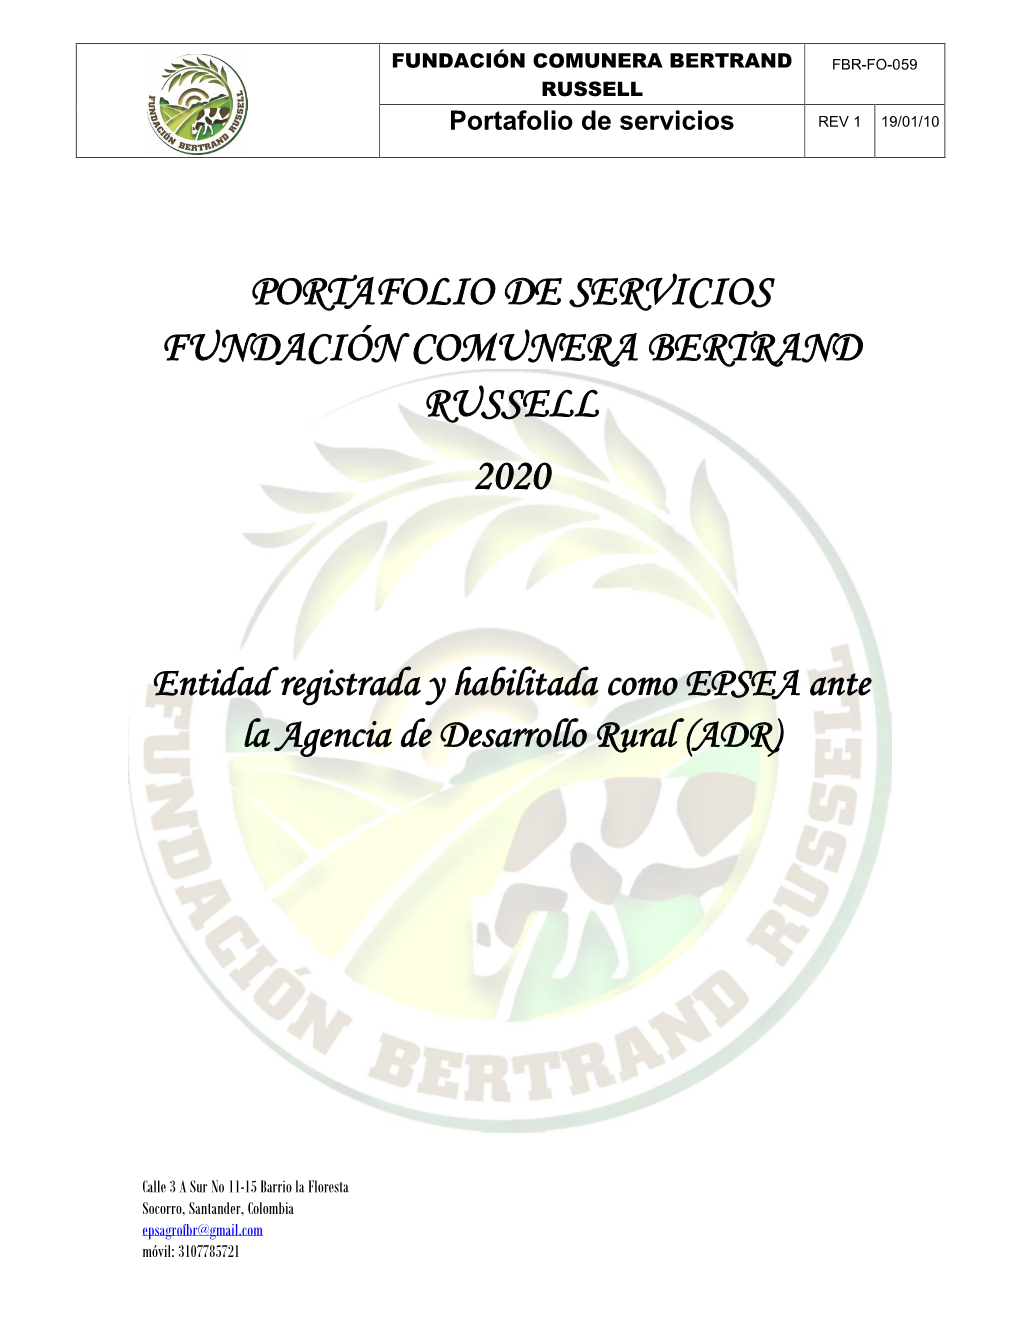 Portafolio De Servicios Fundación Comunera Bertrand Russell 2020